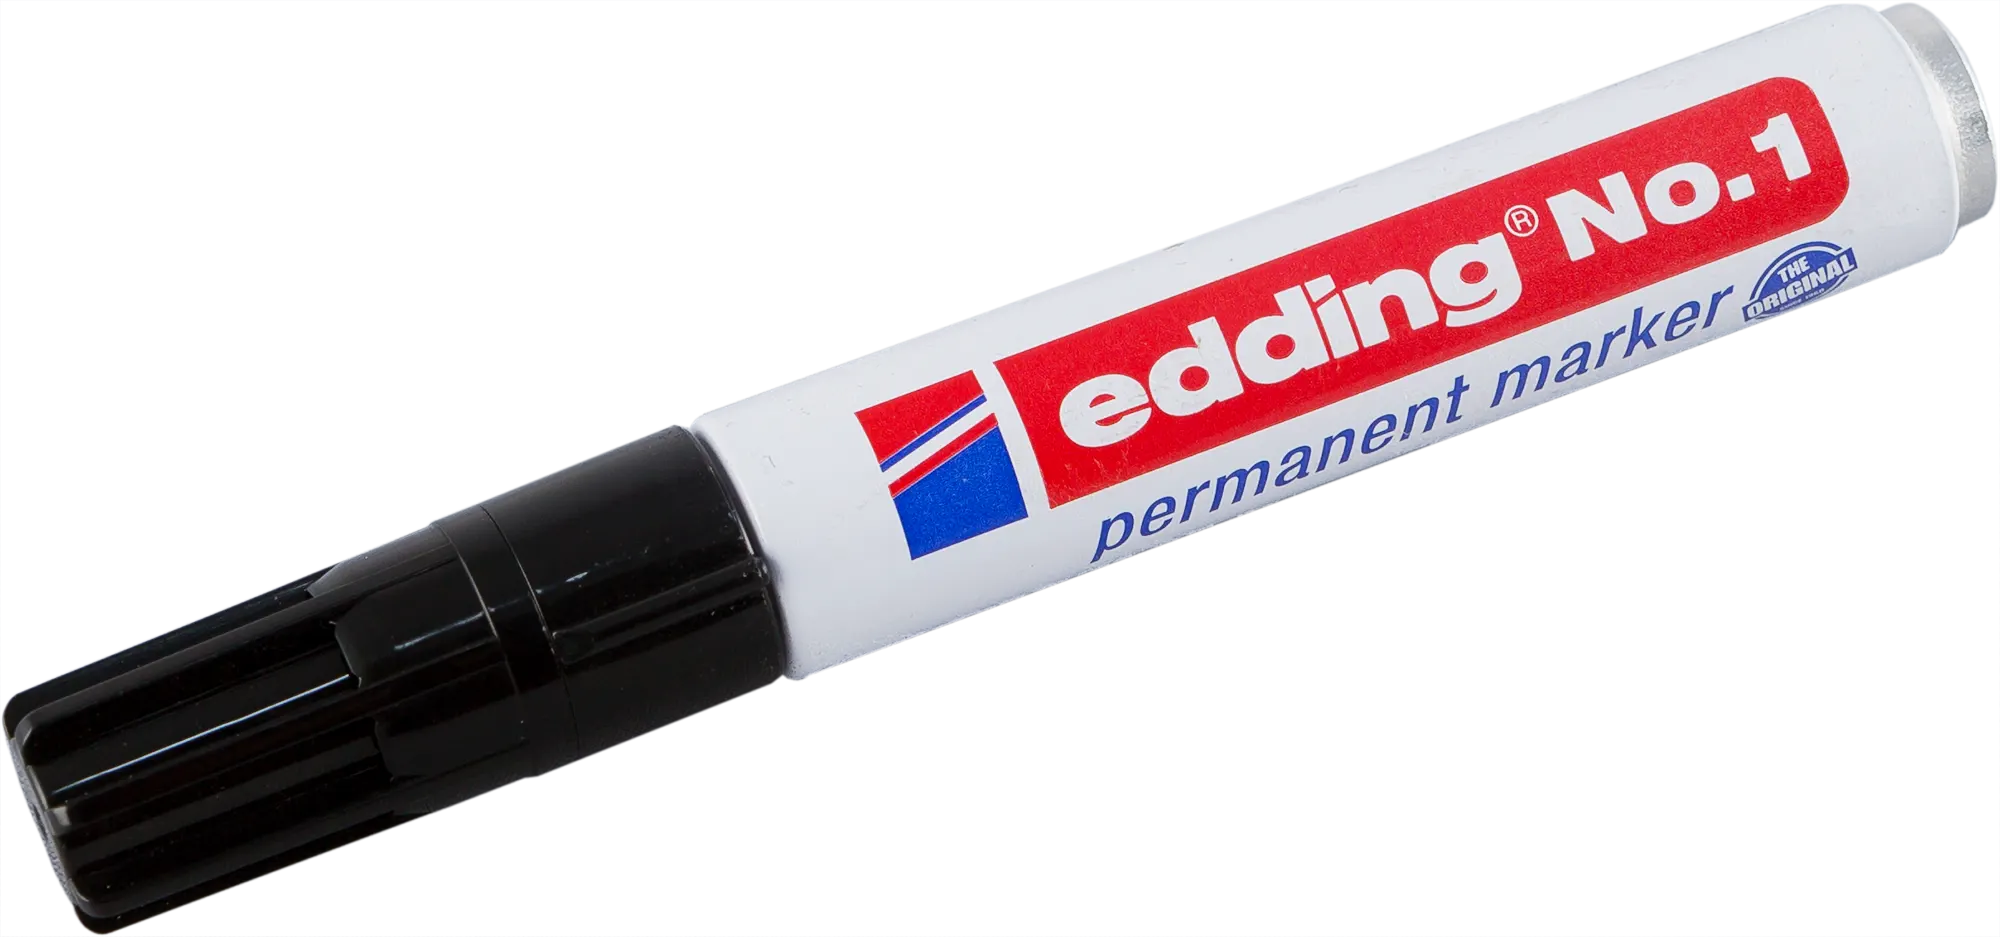 Маркер заправляемый Edding, чёрный 1-5 мм перманентный маркер для надписей и рисования edding